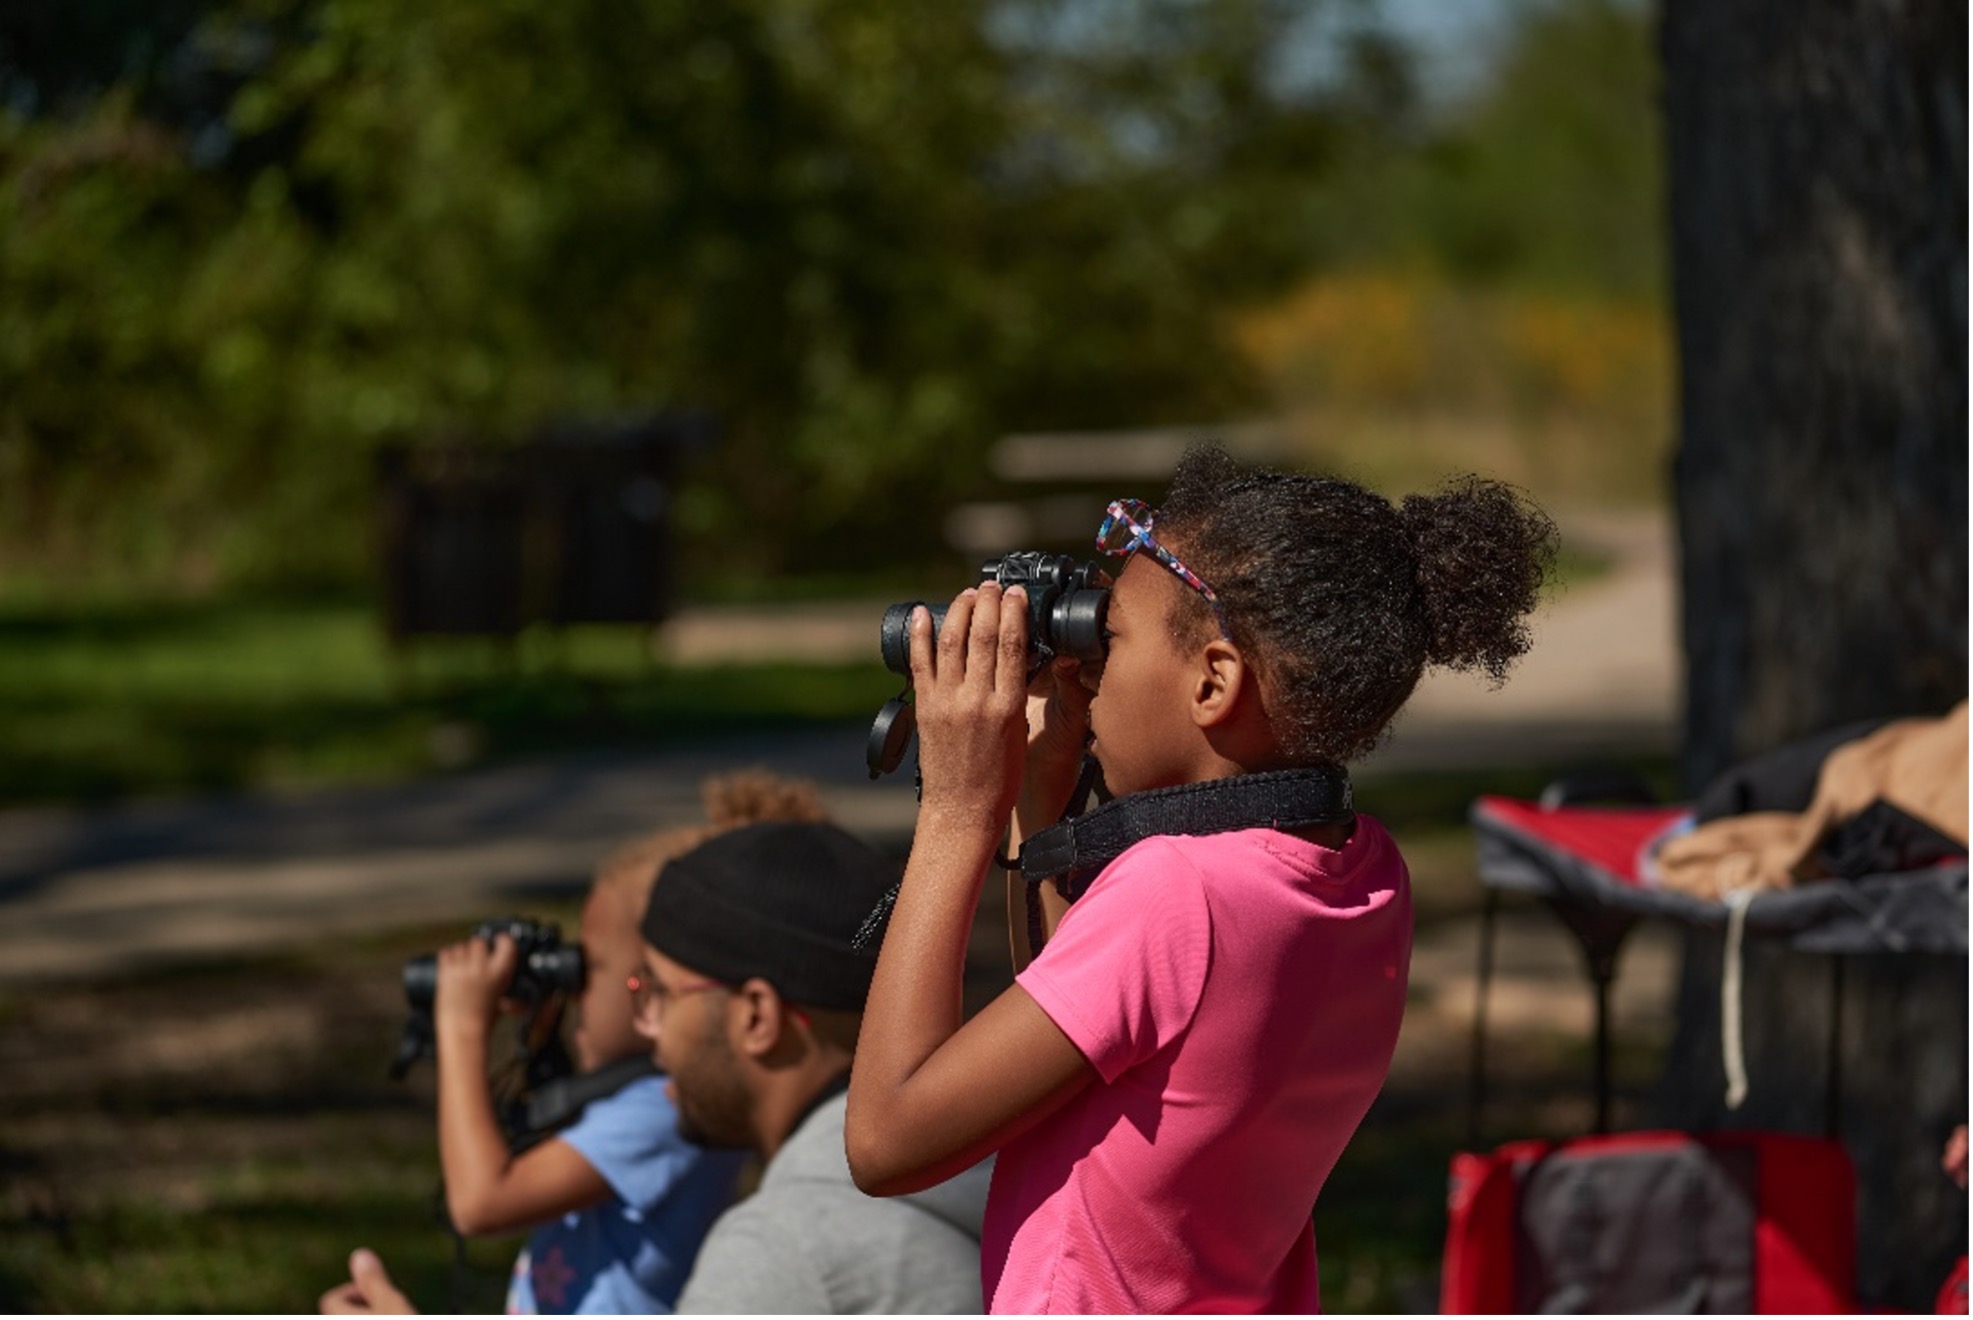 Child watches bird with binoculars 